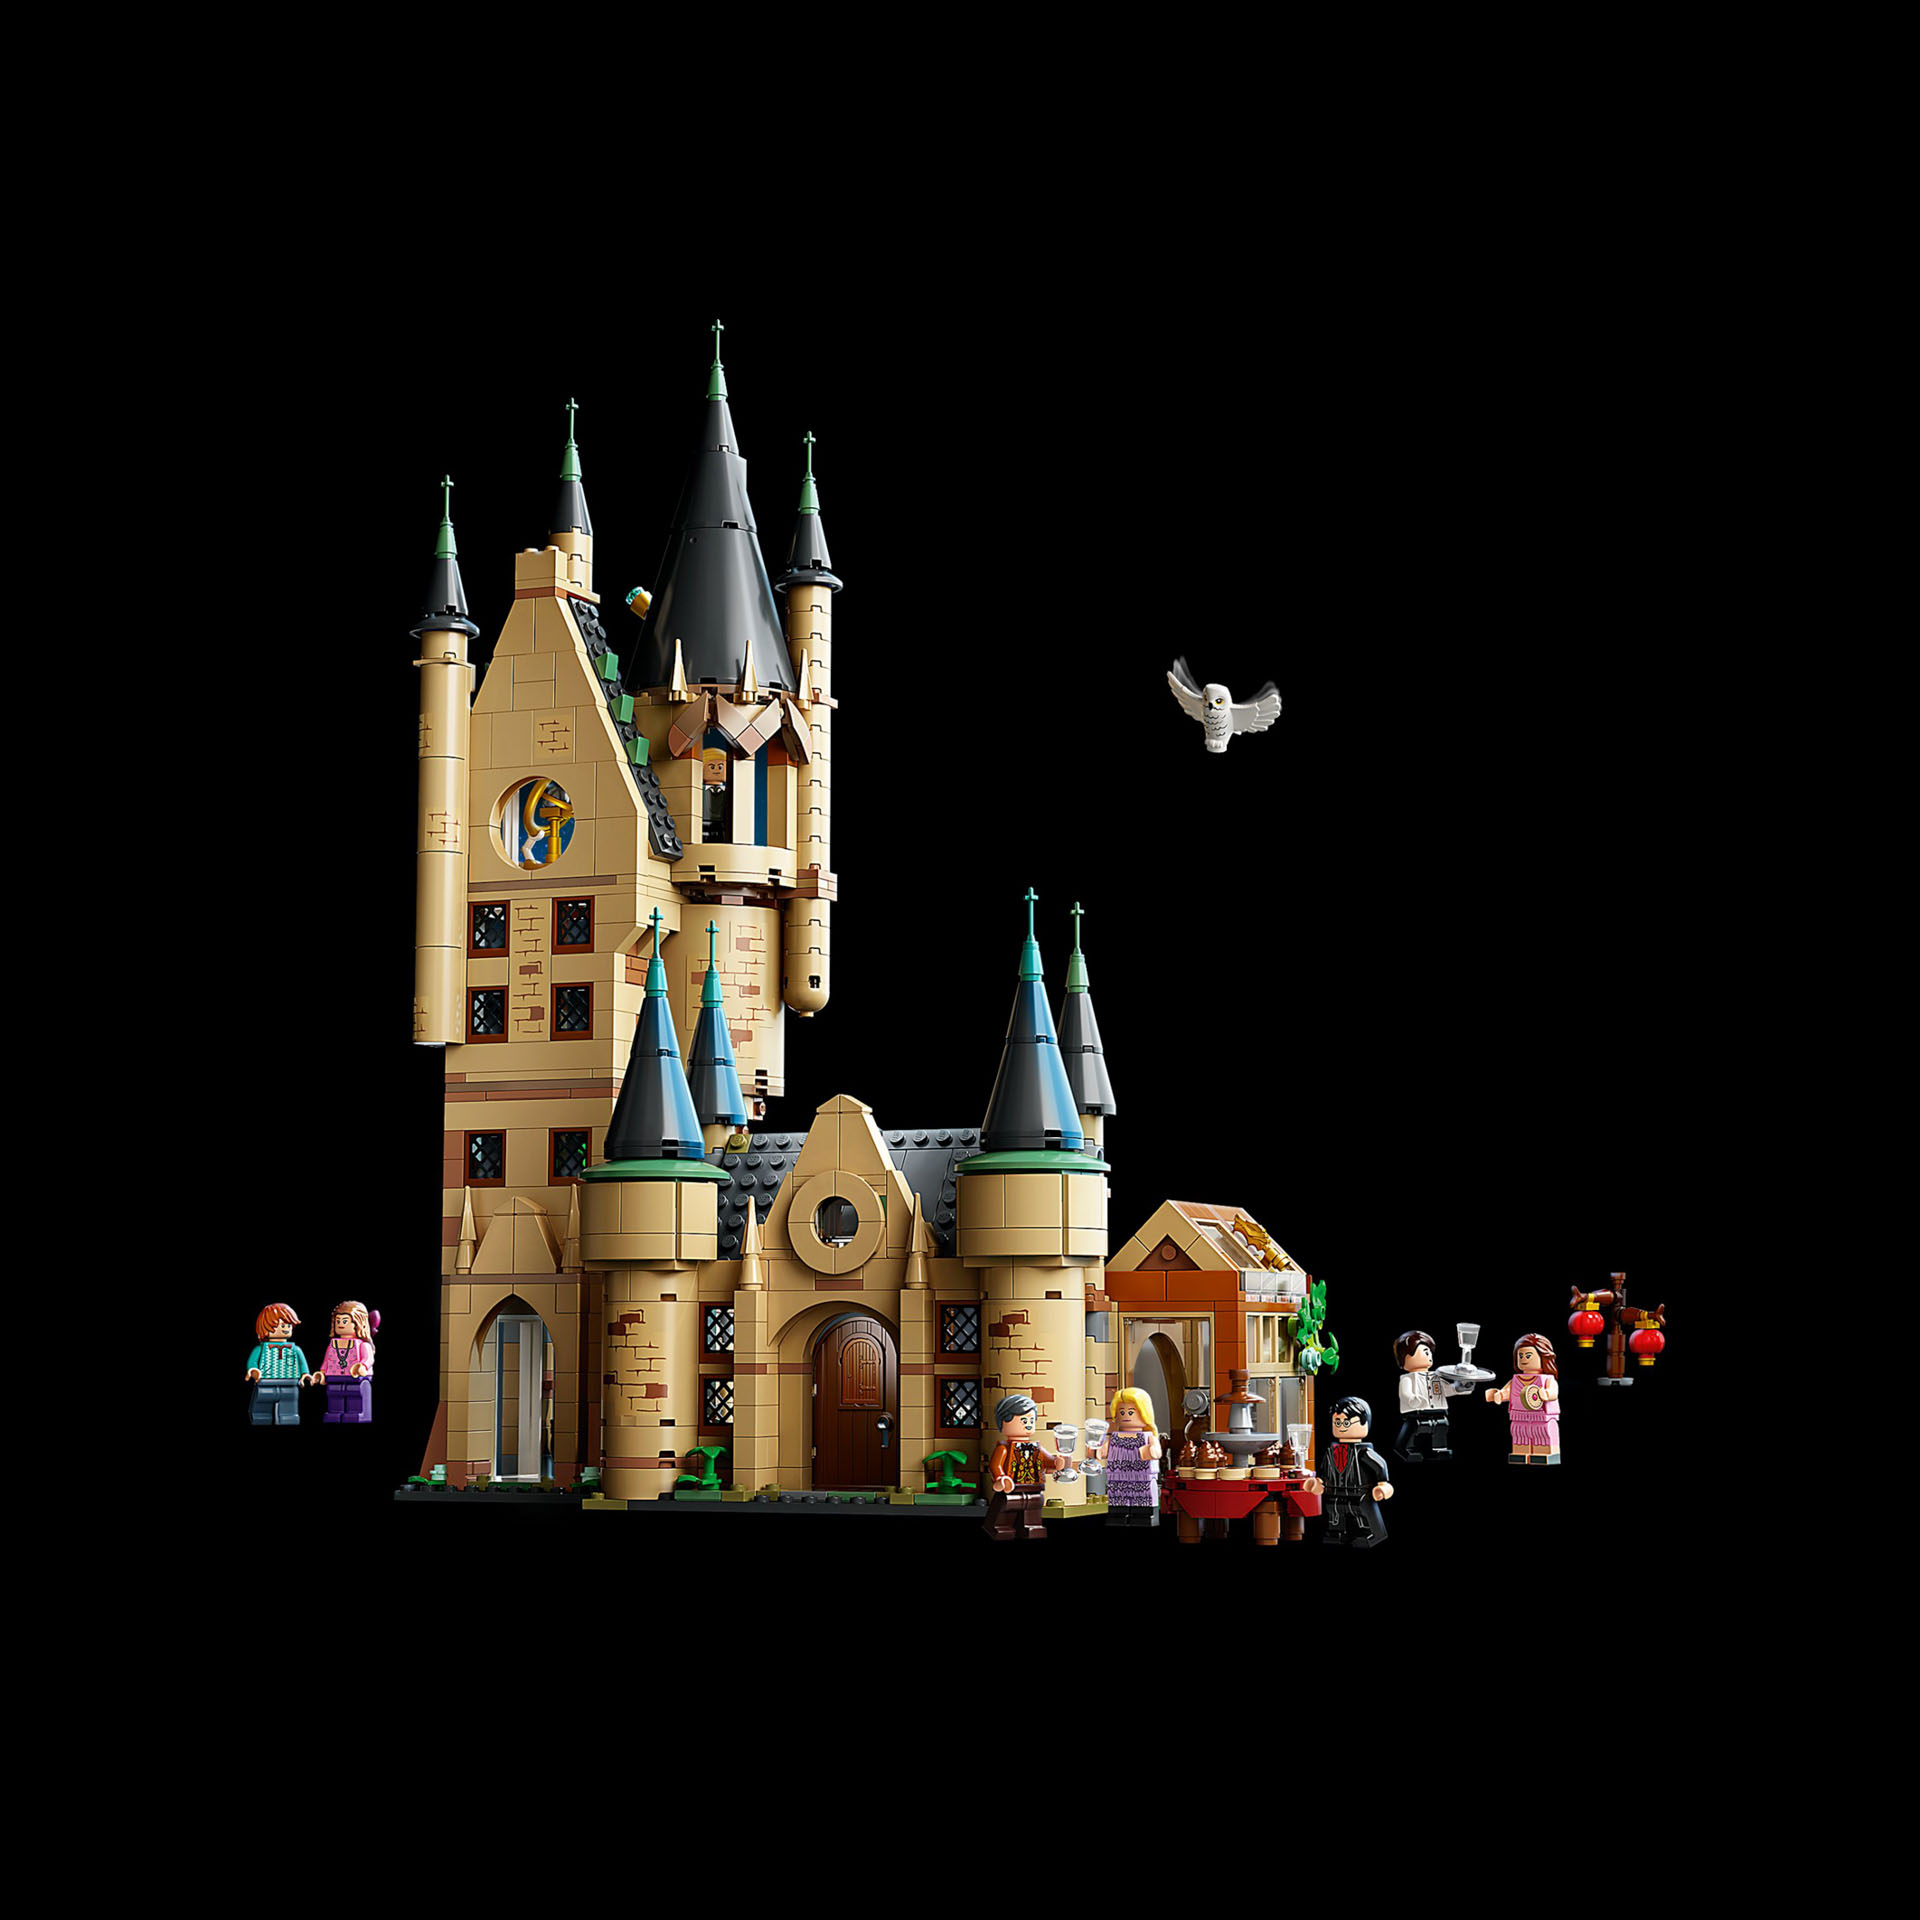 LEGO Harry Potter Torre di Astronomia di Hogwarts, Modello di Castello Giocattol 75969, , large